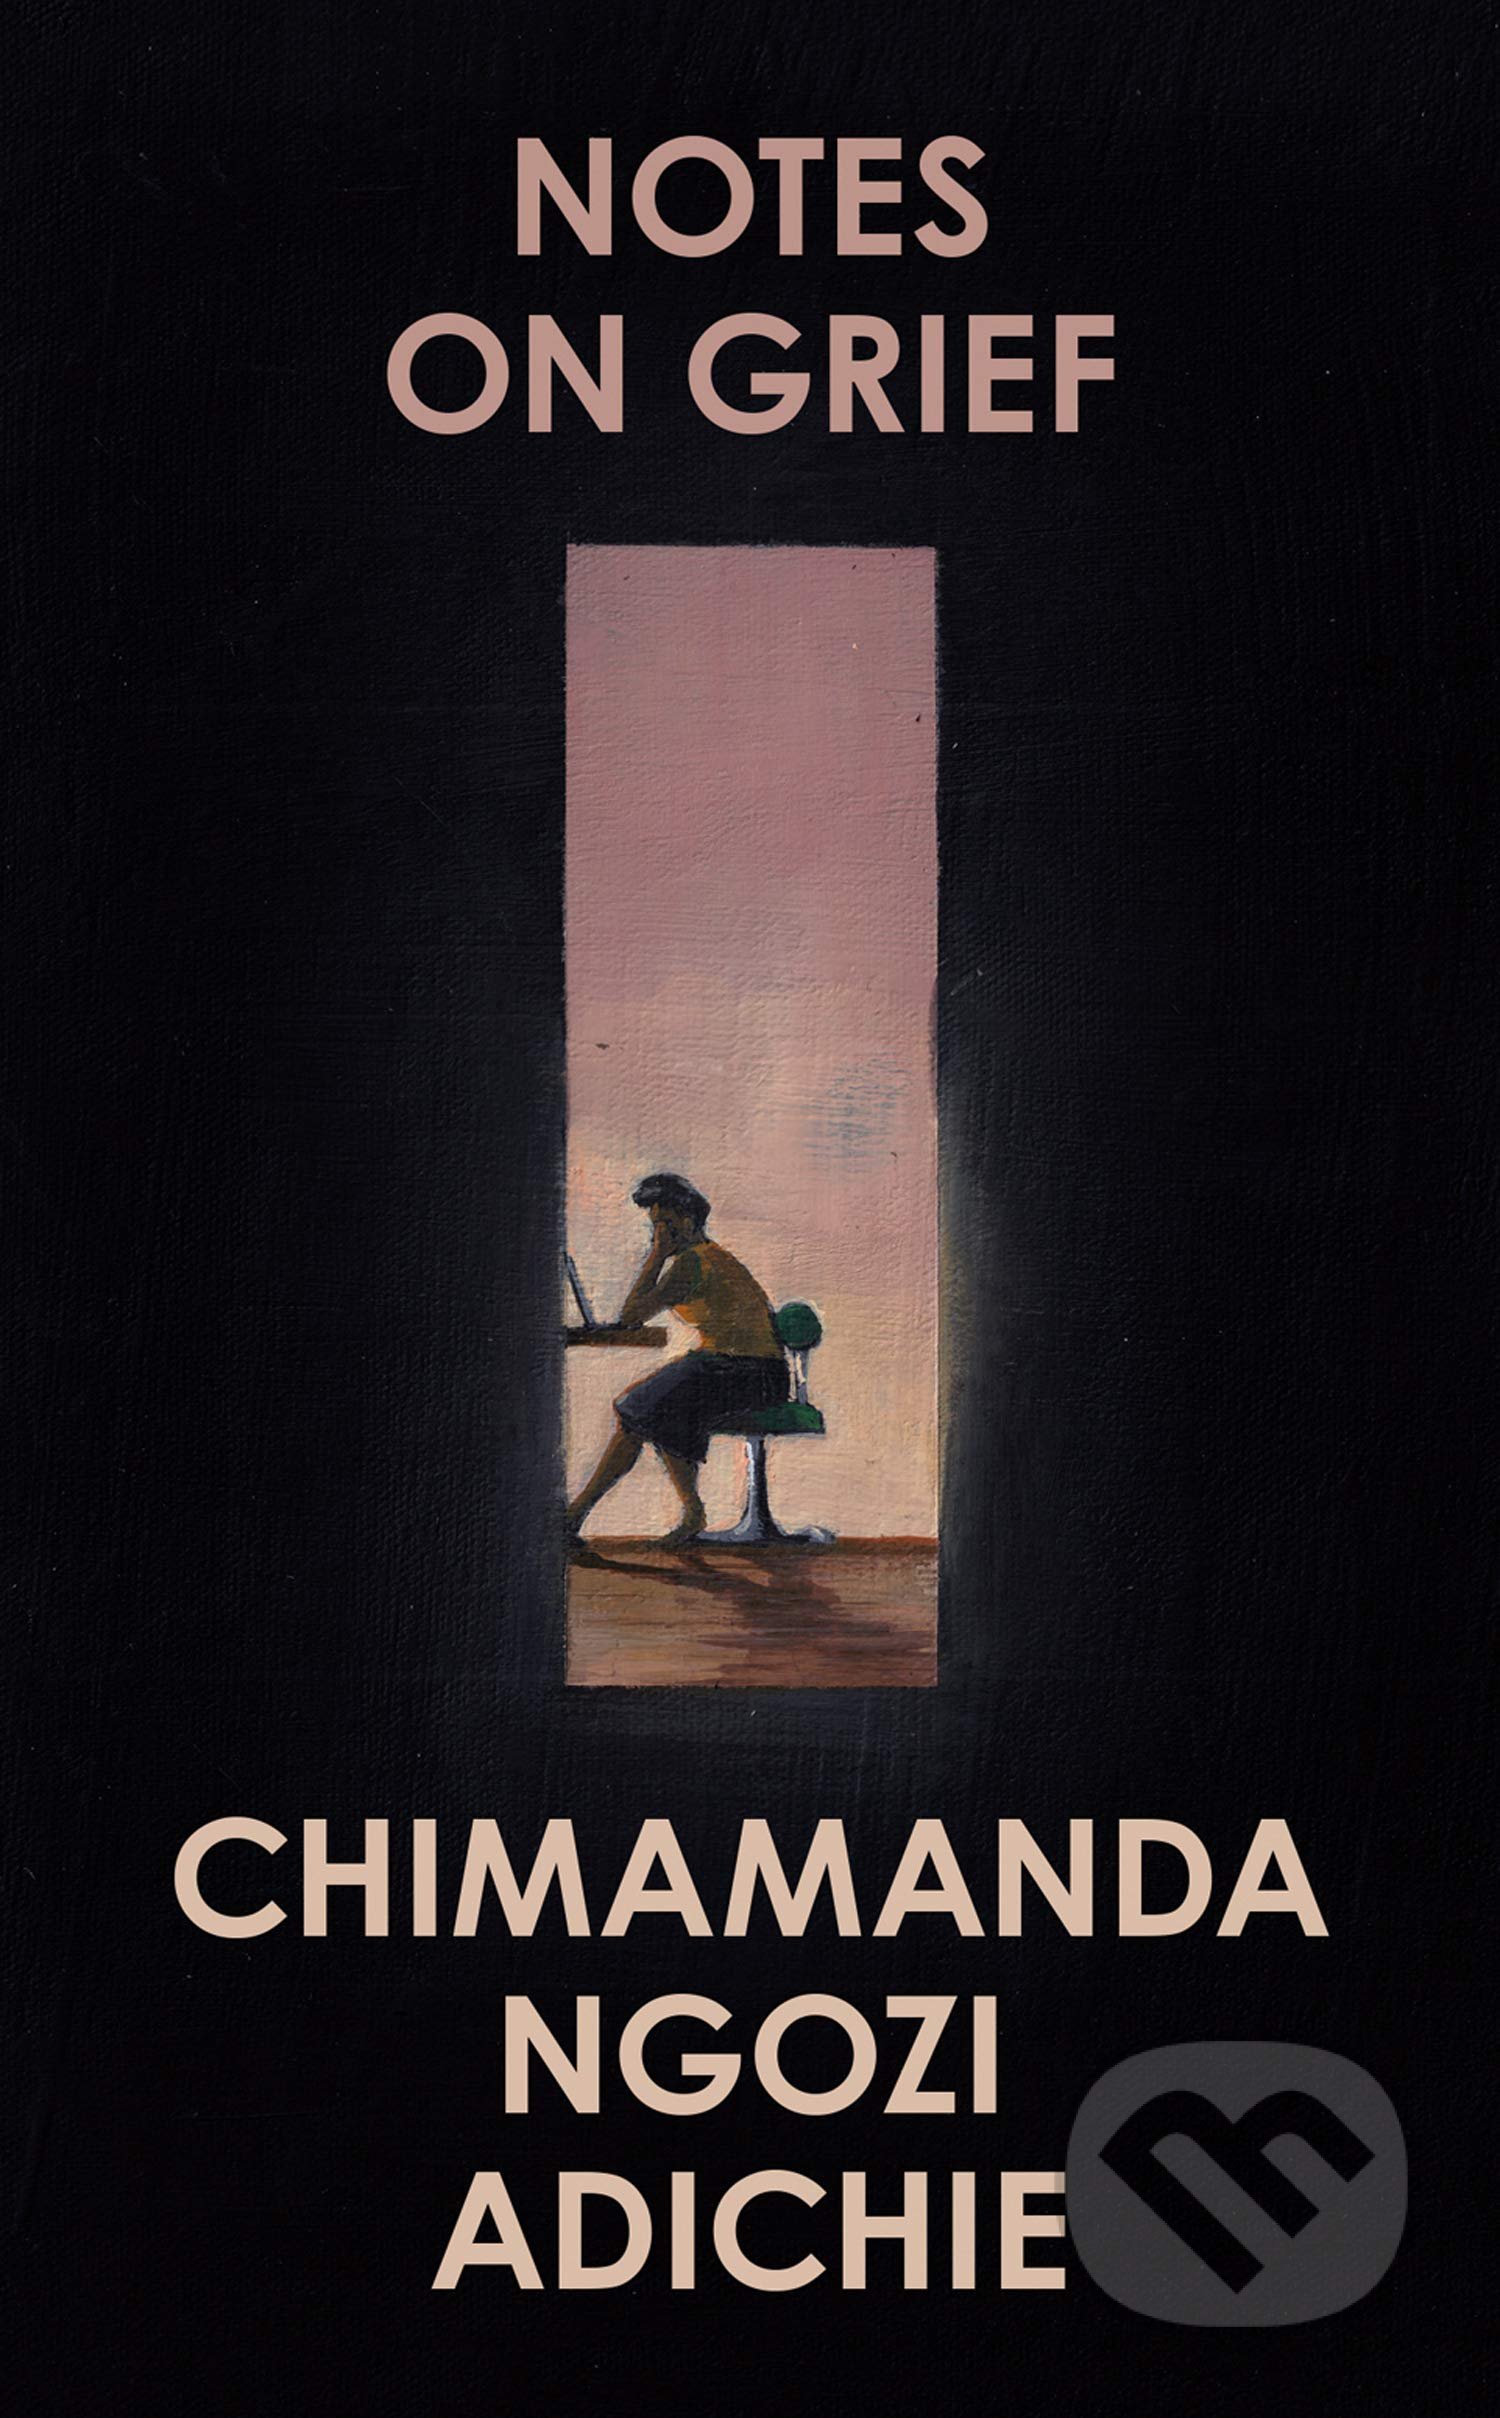 Notes on Grief - Chimamanda Ngozi Adichie, Fourth Estate, 2021